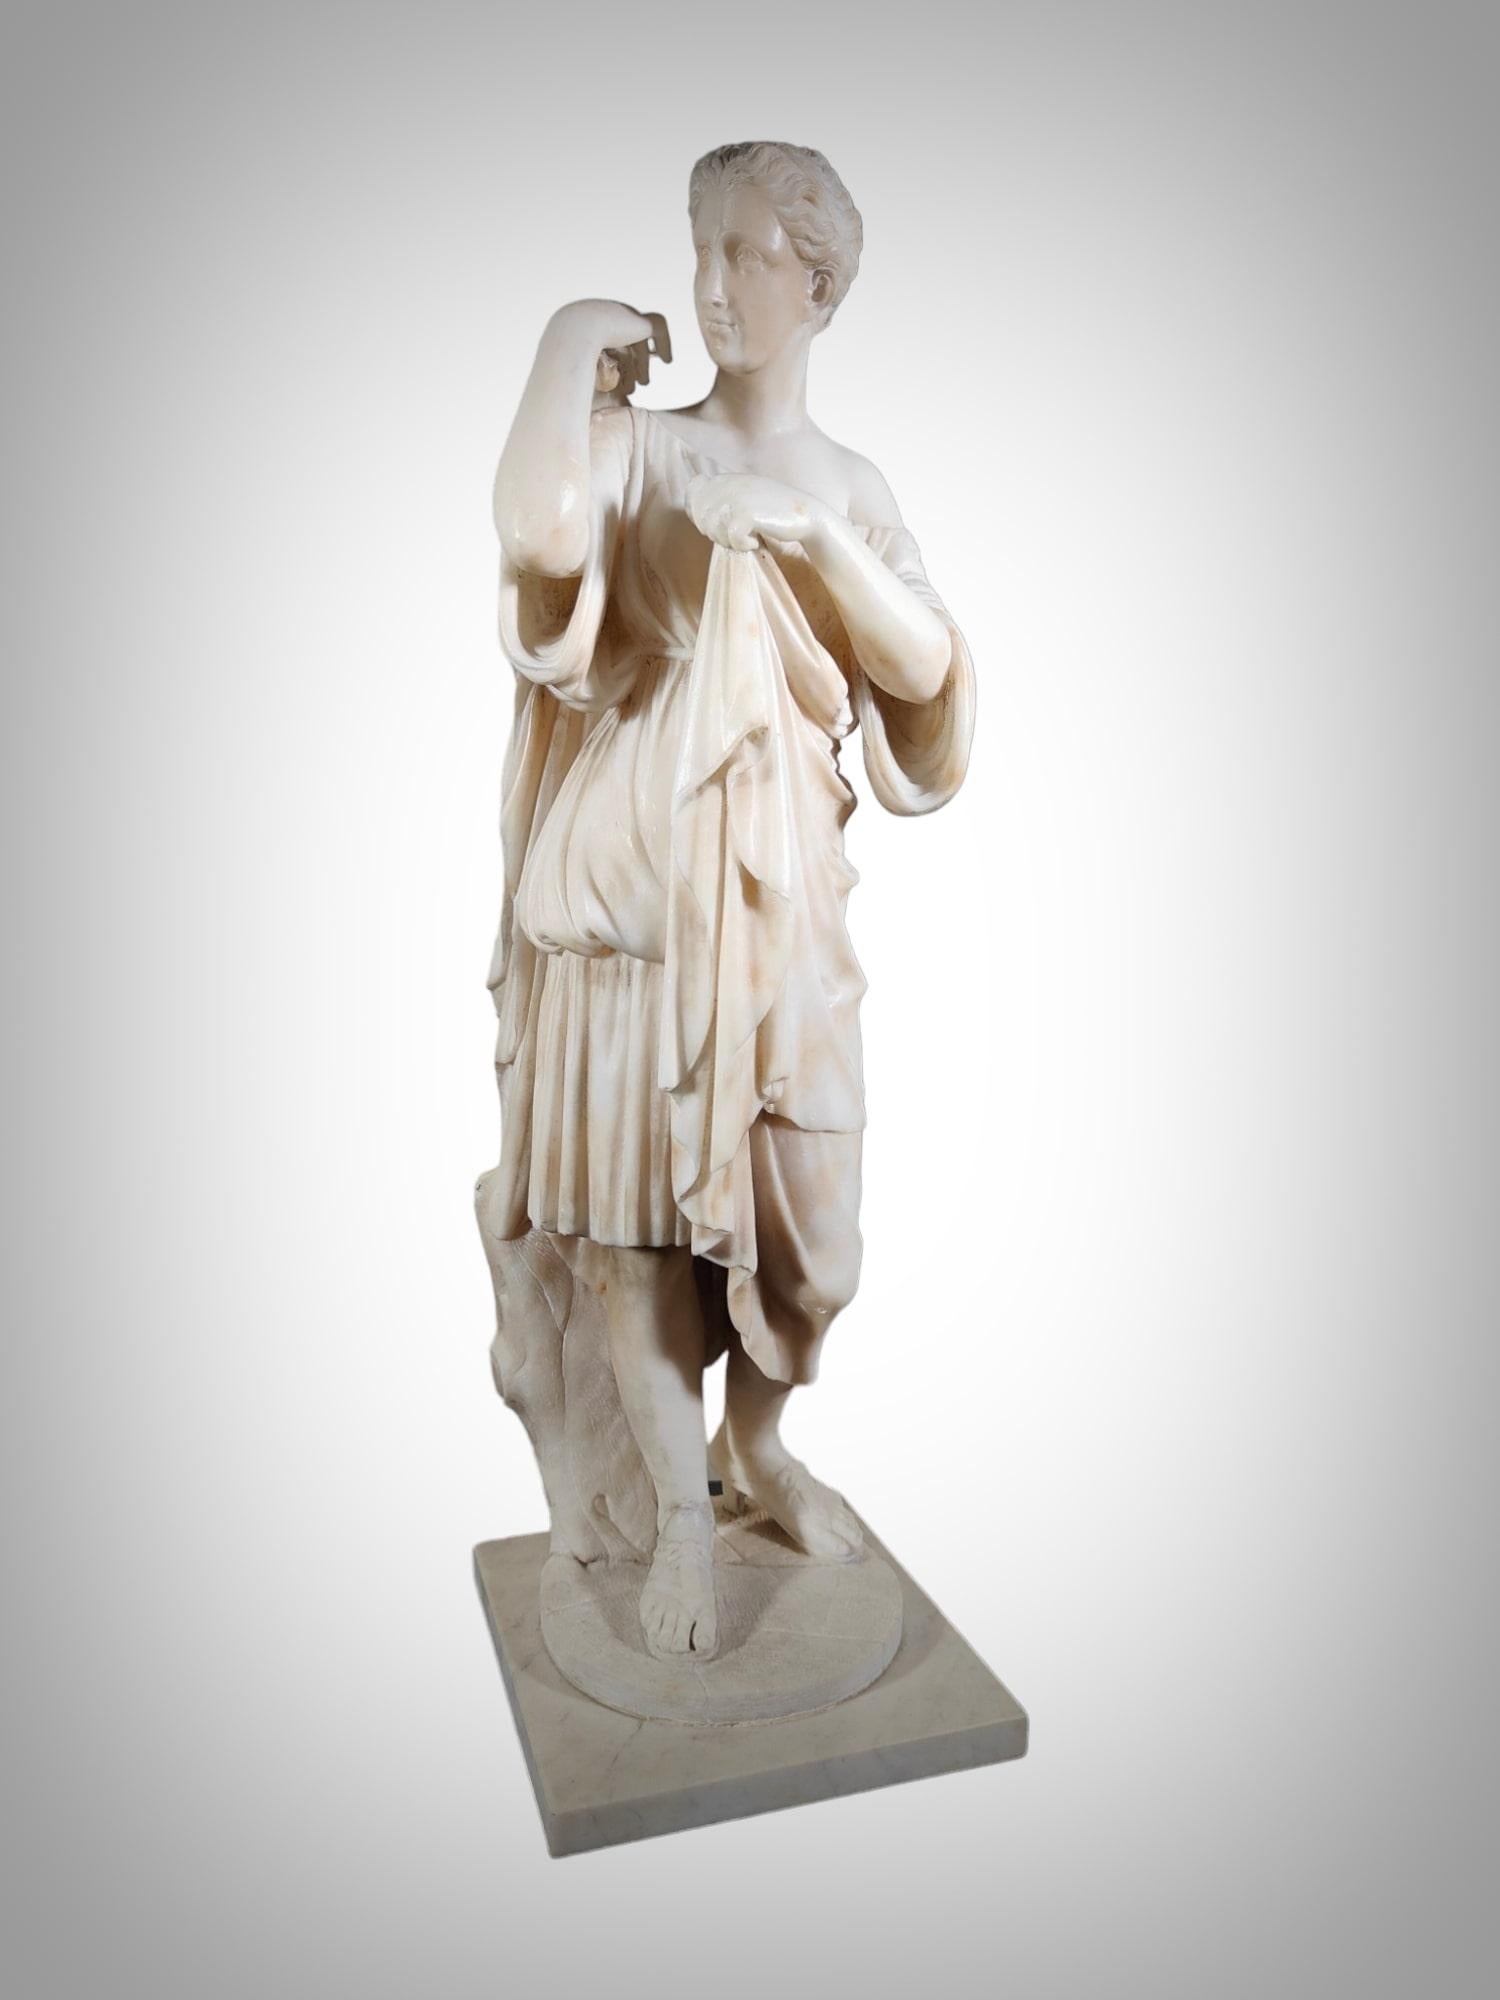 Il s'agit de la sculpture d'une femme couverte d'un chiton drapé, représentant probablement la déesse Artemis et traditionnellement attribuée au sculpteur Praxiteles. Trouvée dans l'ancienne ville de Borghese, elle faisait partie de la collection de